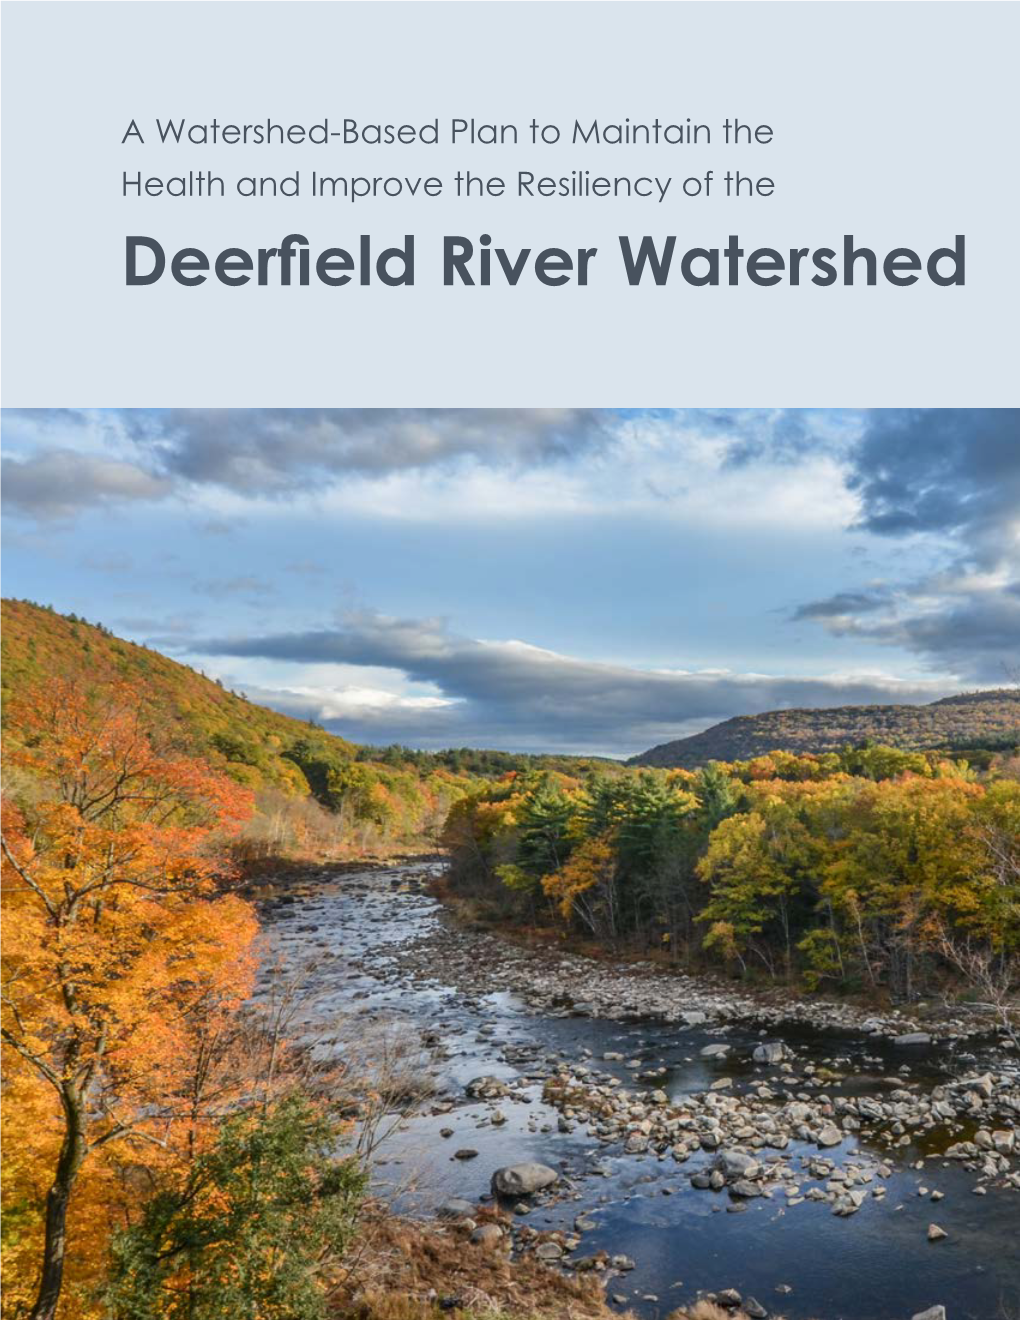 Deerfield River Watershed Association